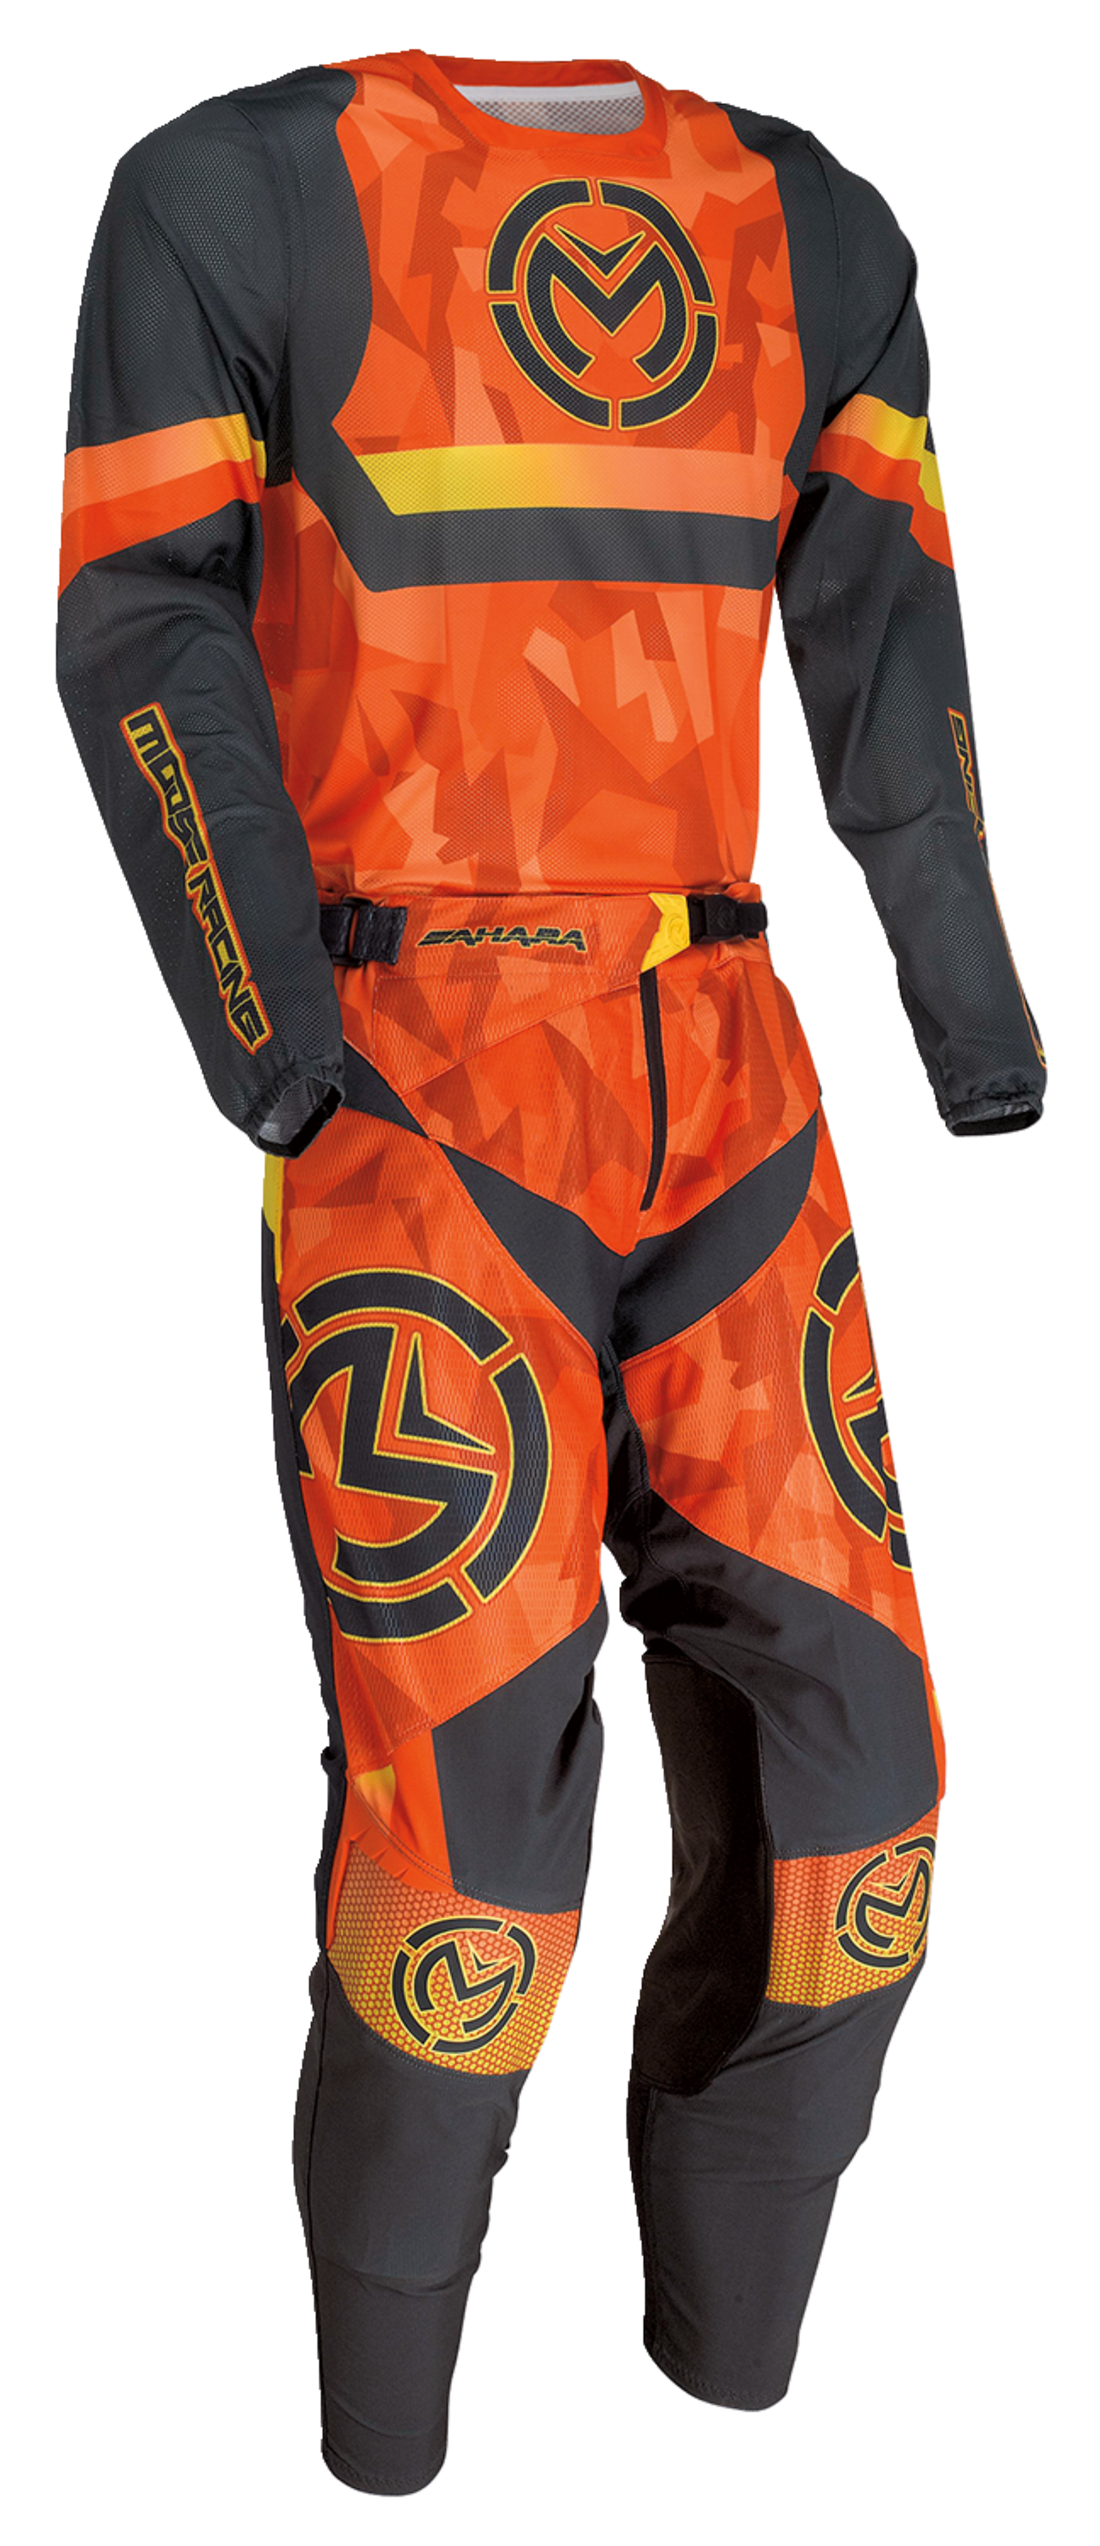 MOOSE RACING Sahara™ Jersey - Orange/Black - Medium 2910-7223